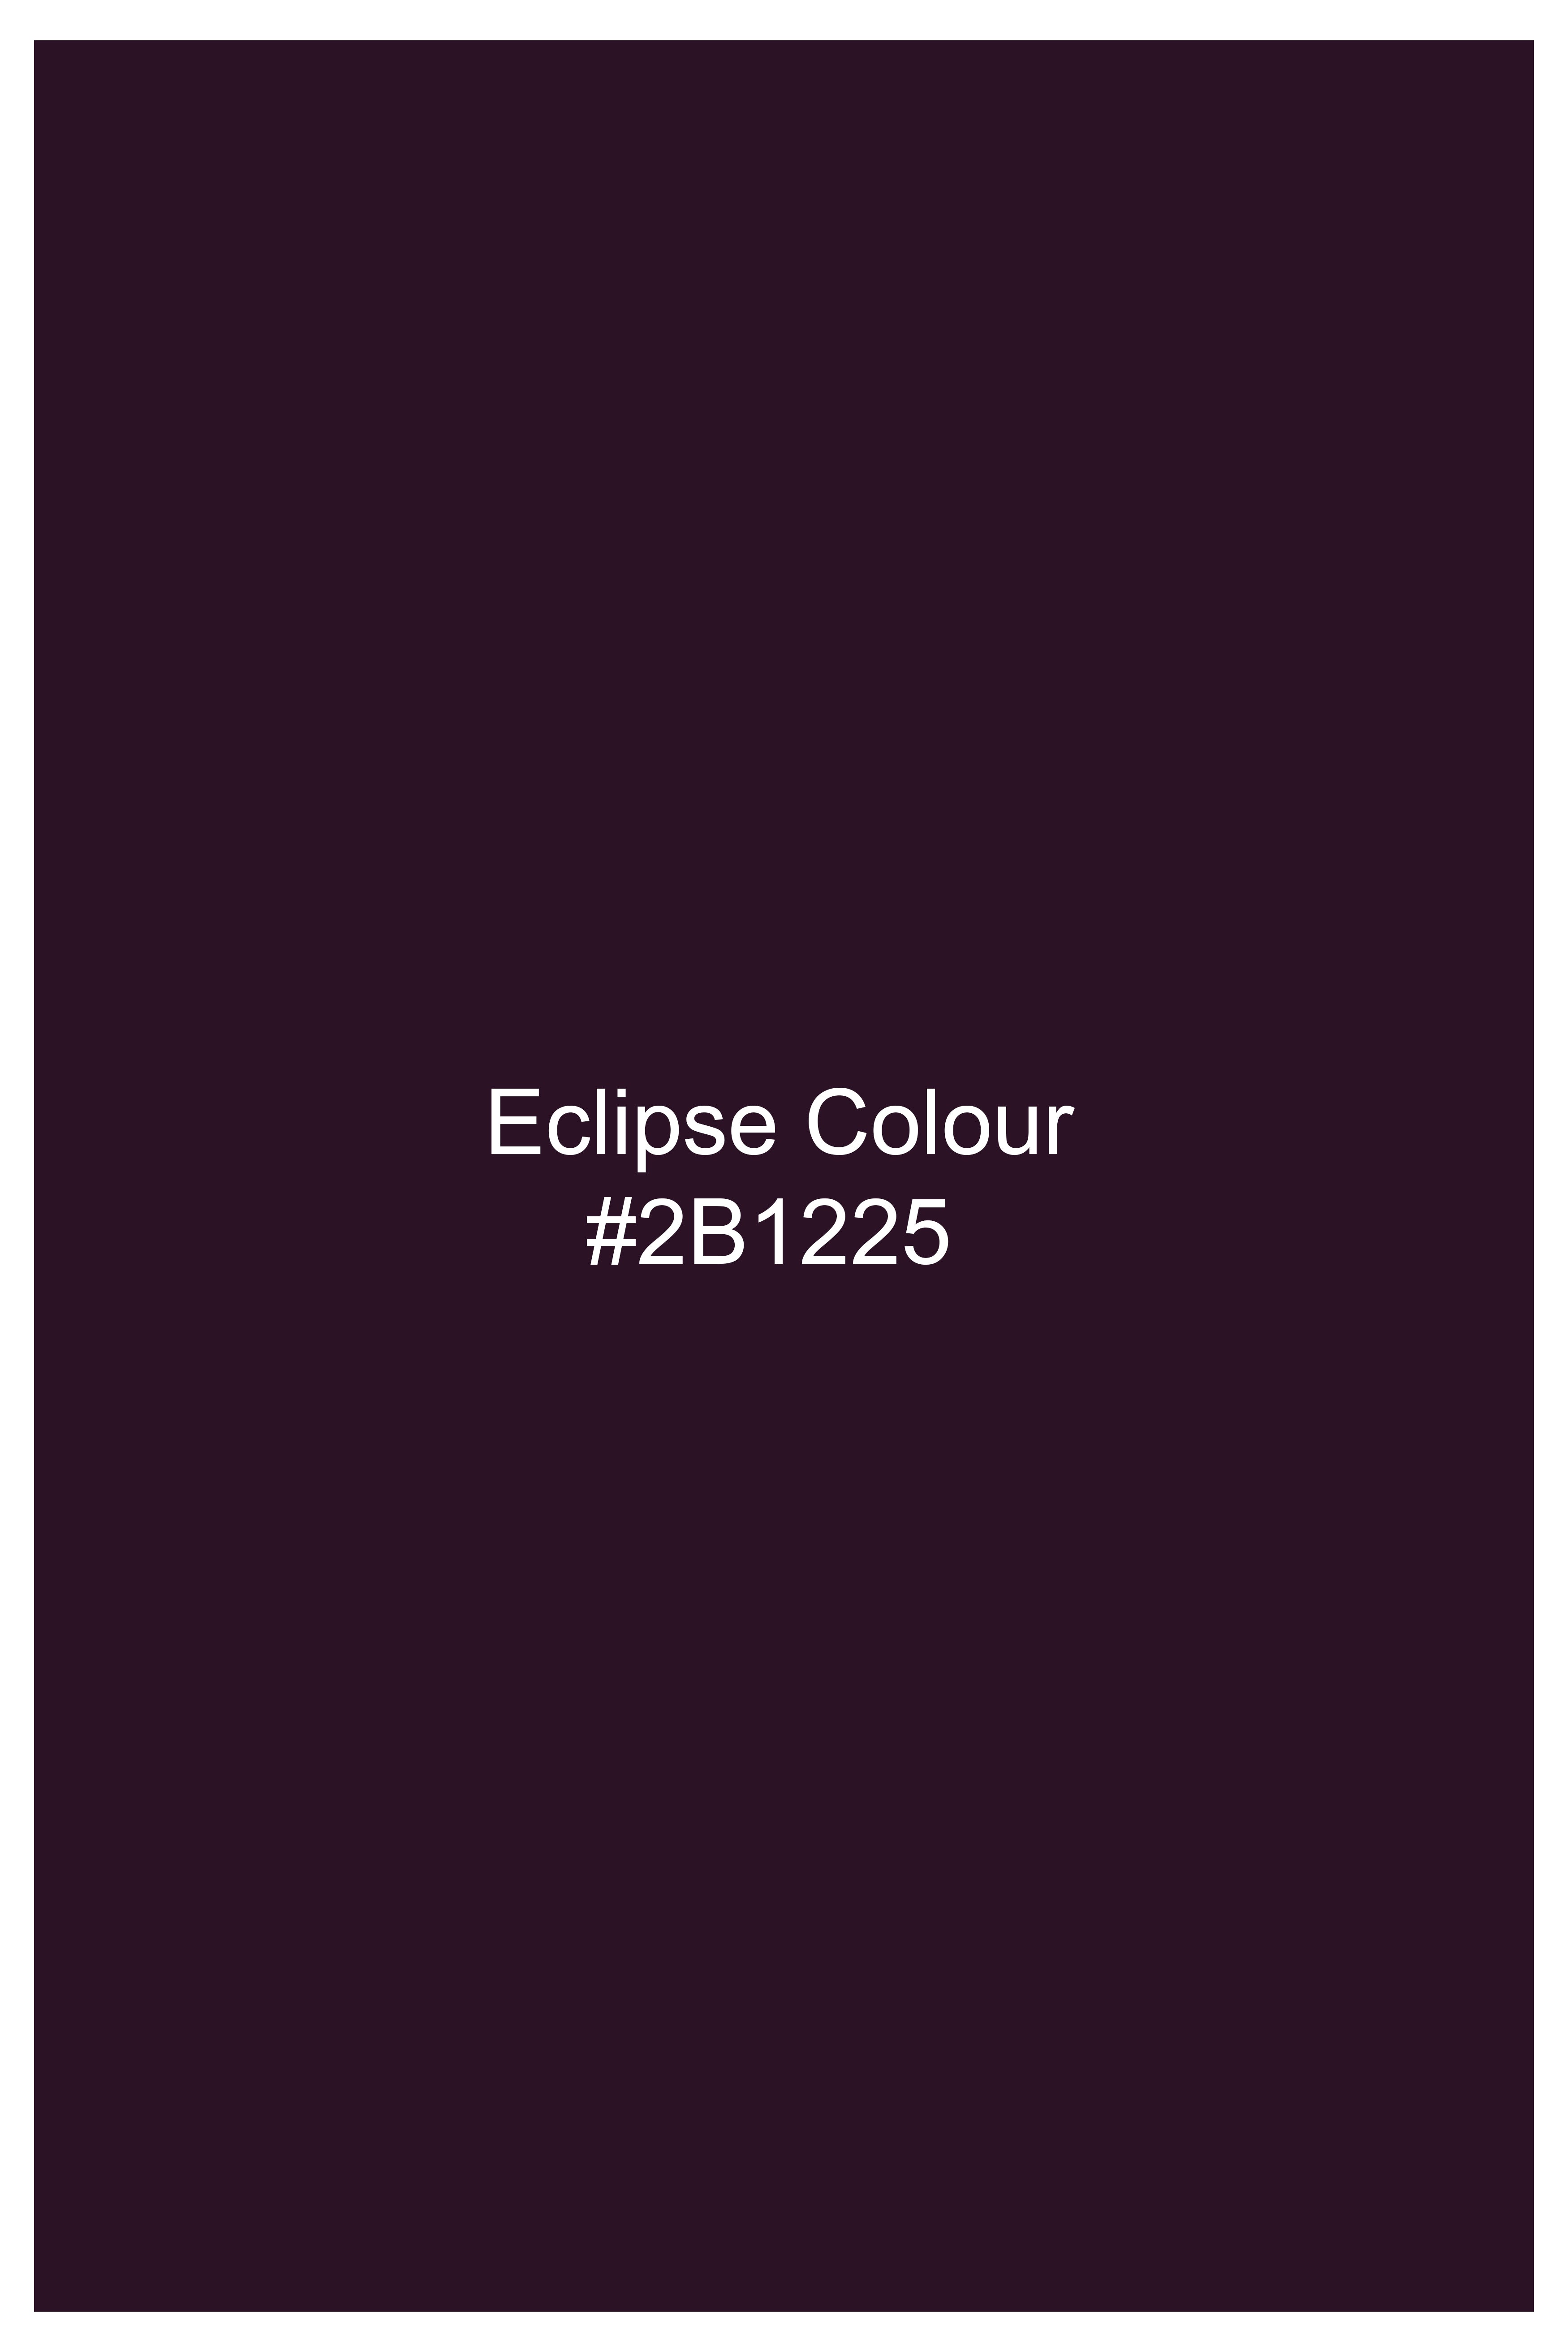 Eclipse Maroon Premium Cotton Pant T2757-28, T2757-30, T2757-32, T2757-34, T2757-36, T2757-38, T2757-40, T2757-42, T2757-44